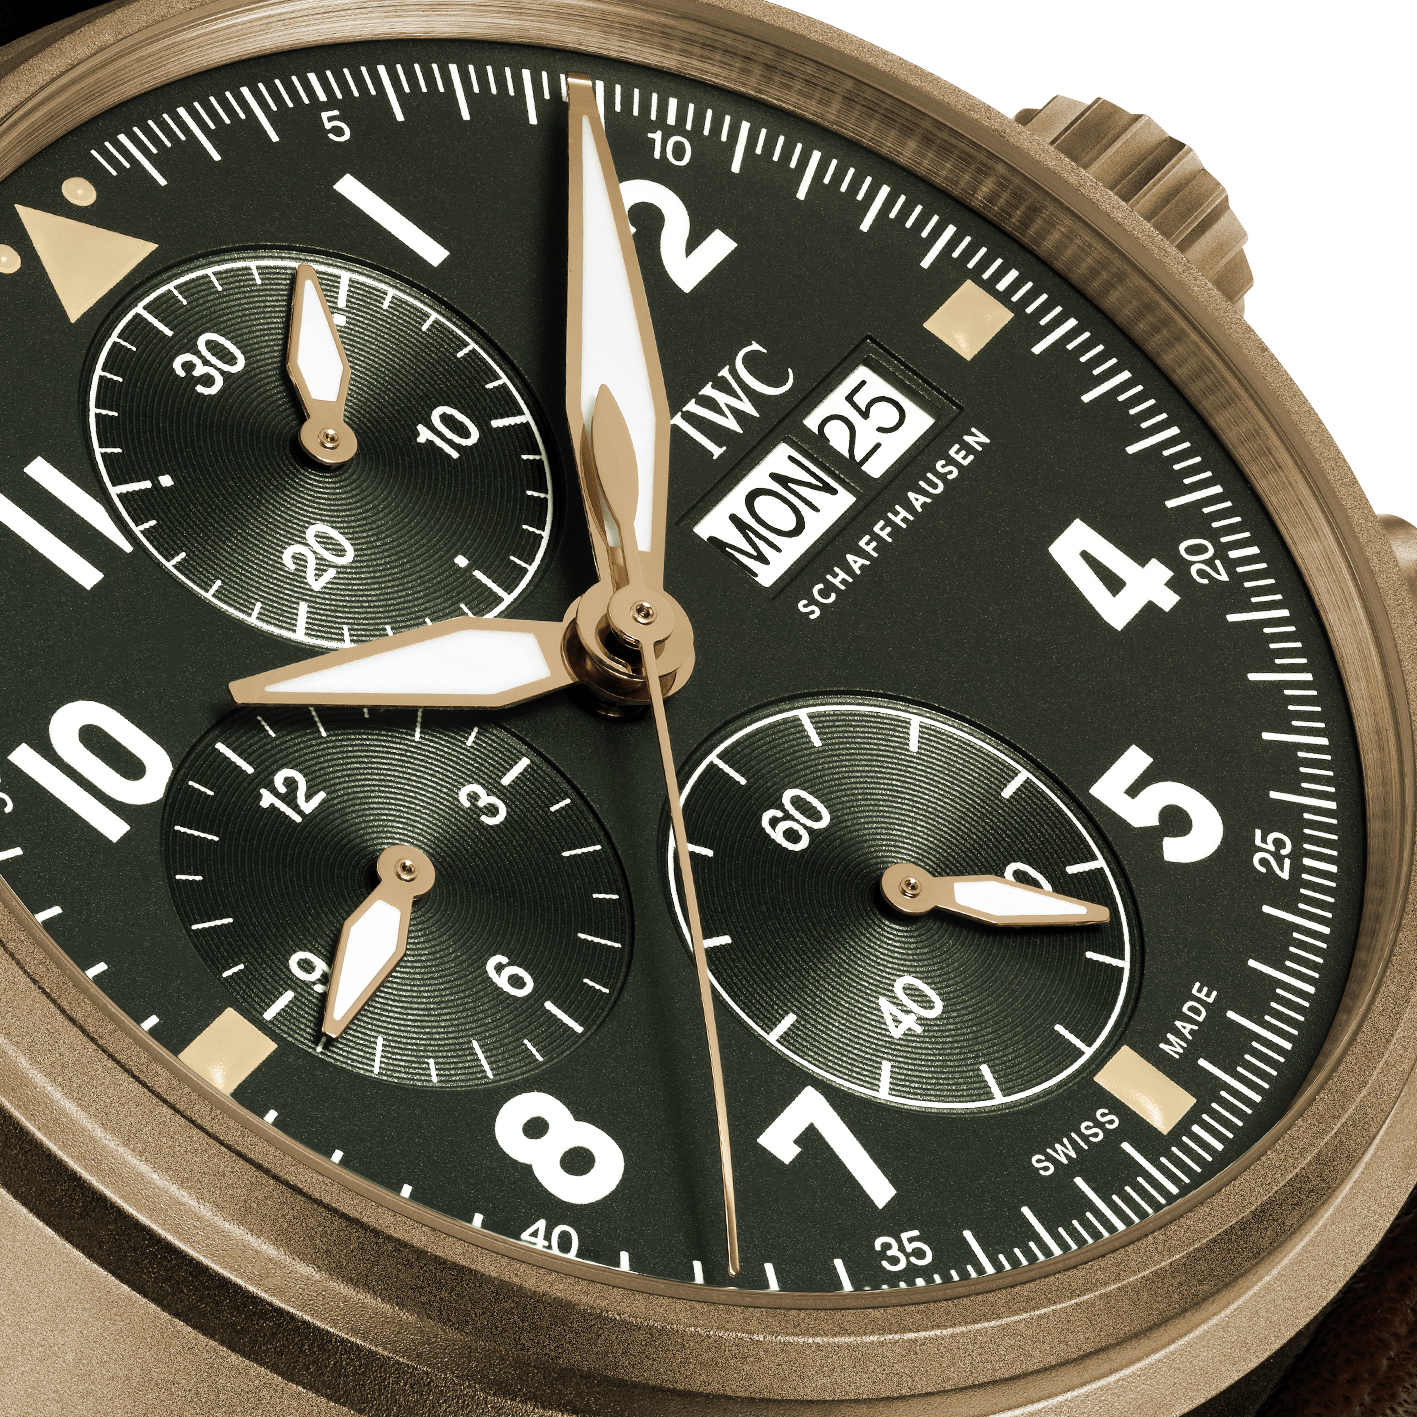 IWC Schaffhausen Pilot's Watch Chronograph Spitfire (IW387902) 3